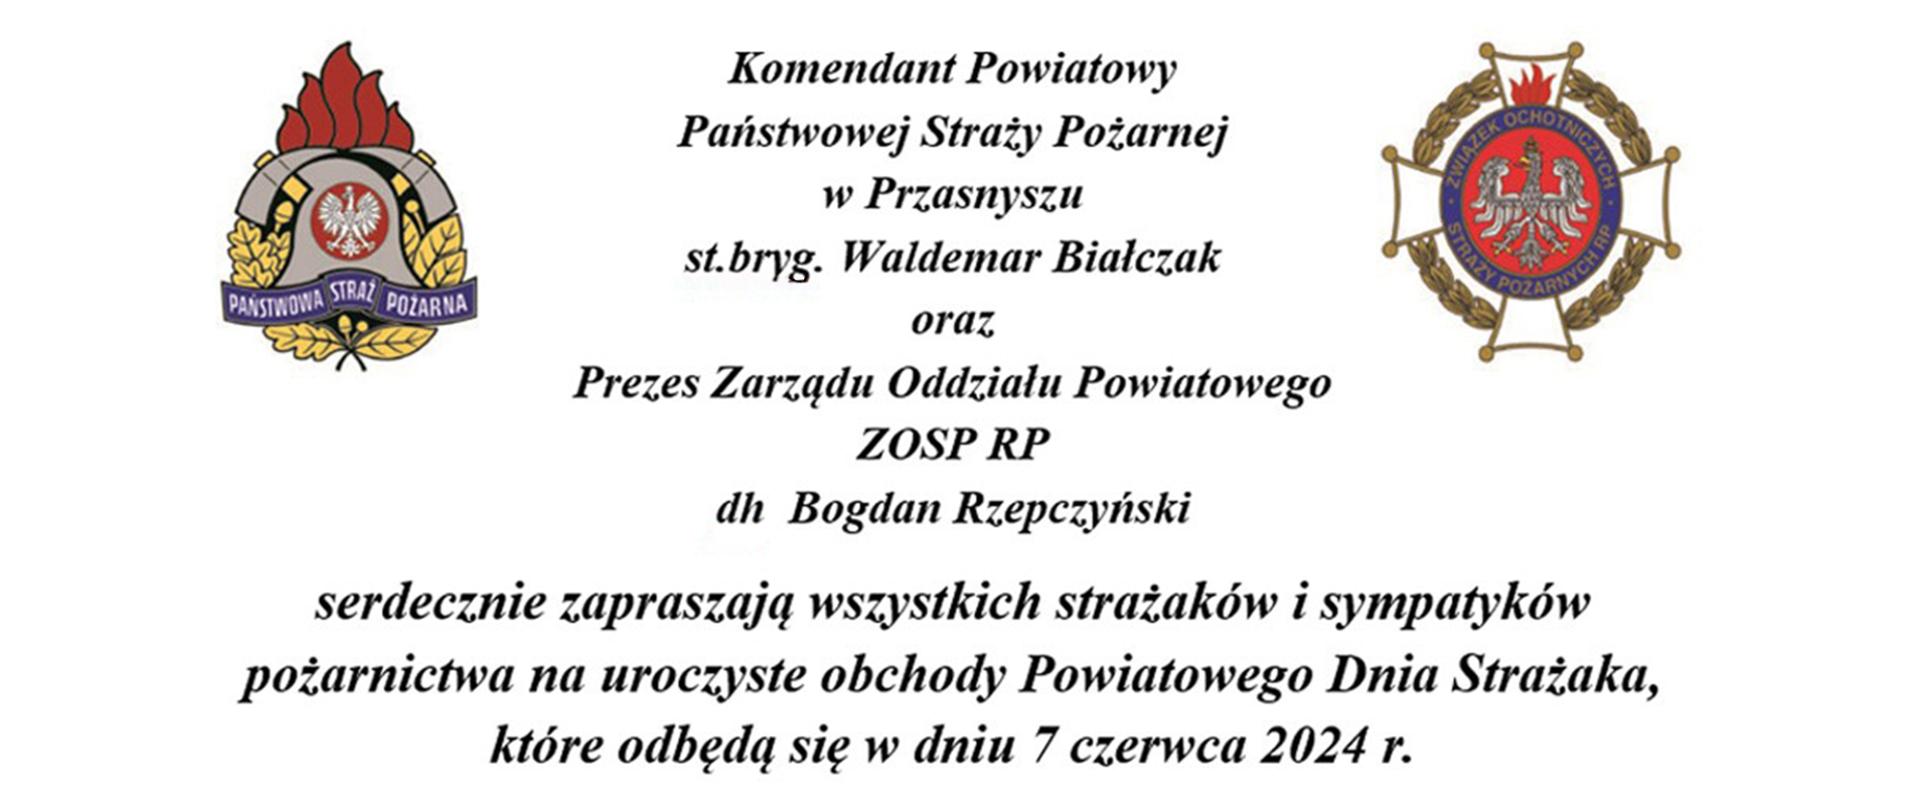 Zaproszenie na uroczyste obchody Powiatowego Dnia Strażaka 2024